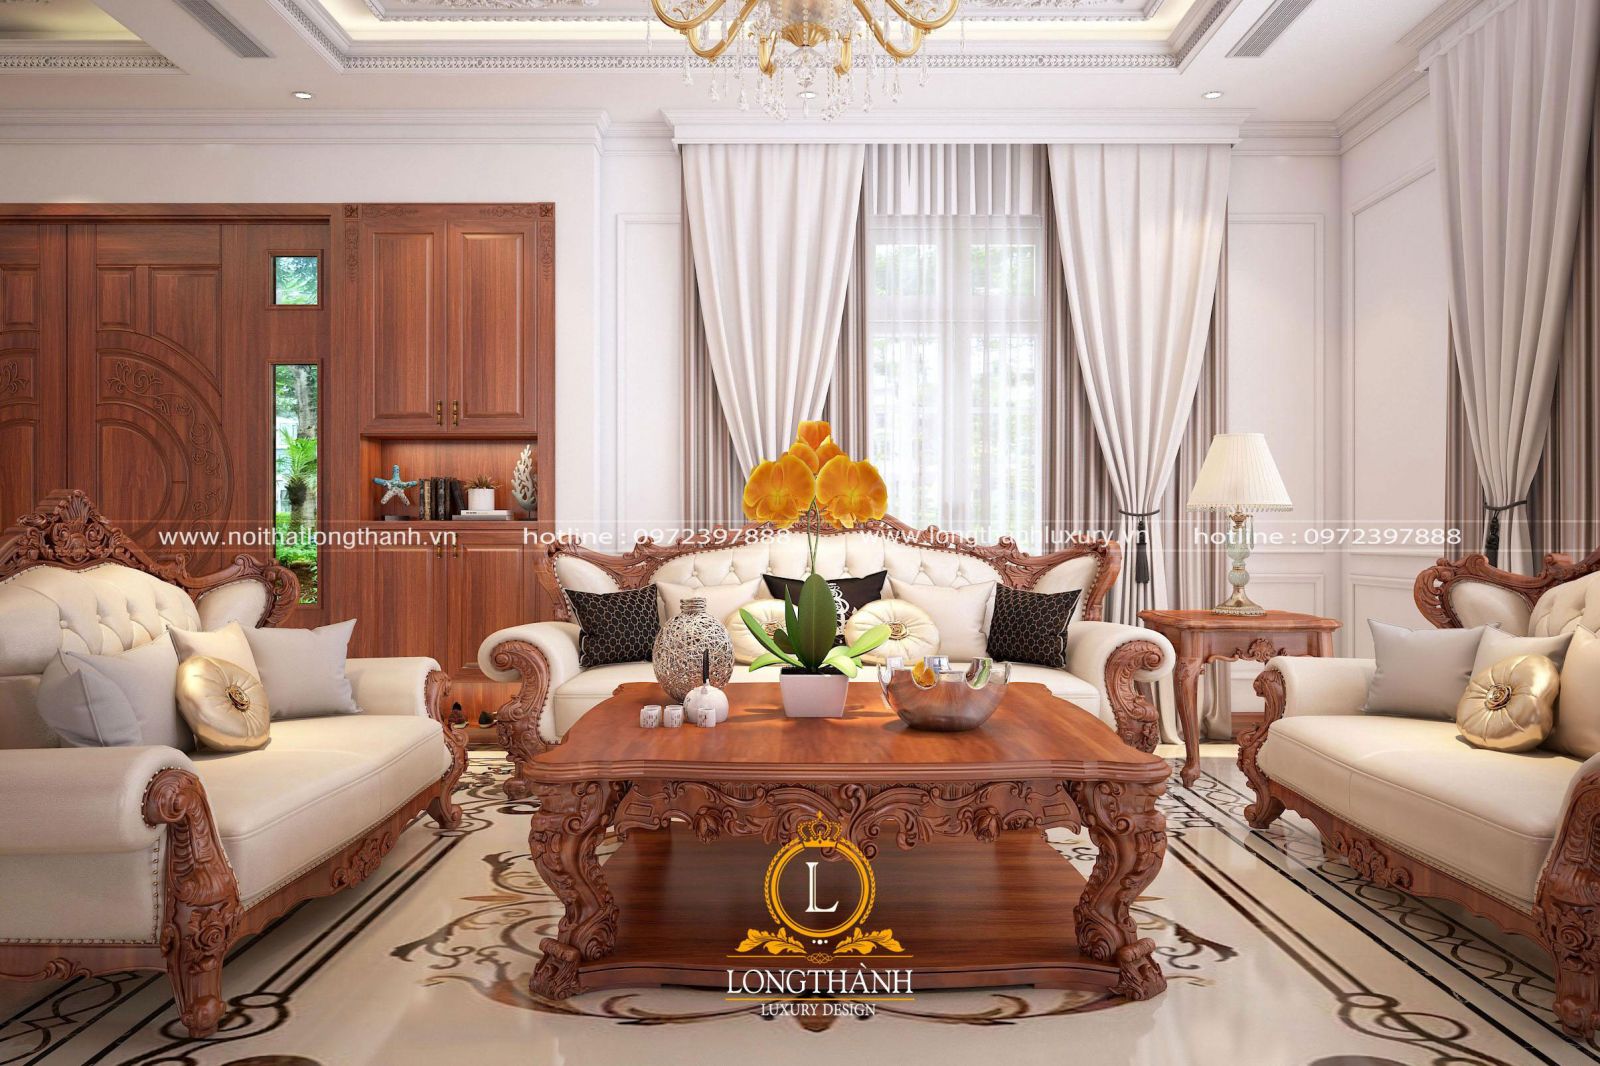 Nội thất sofa tân cổ điển sang trọng trong không gian nội thất